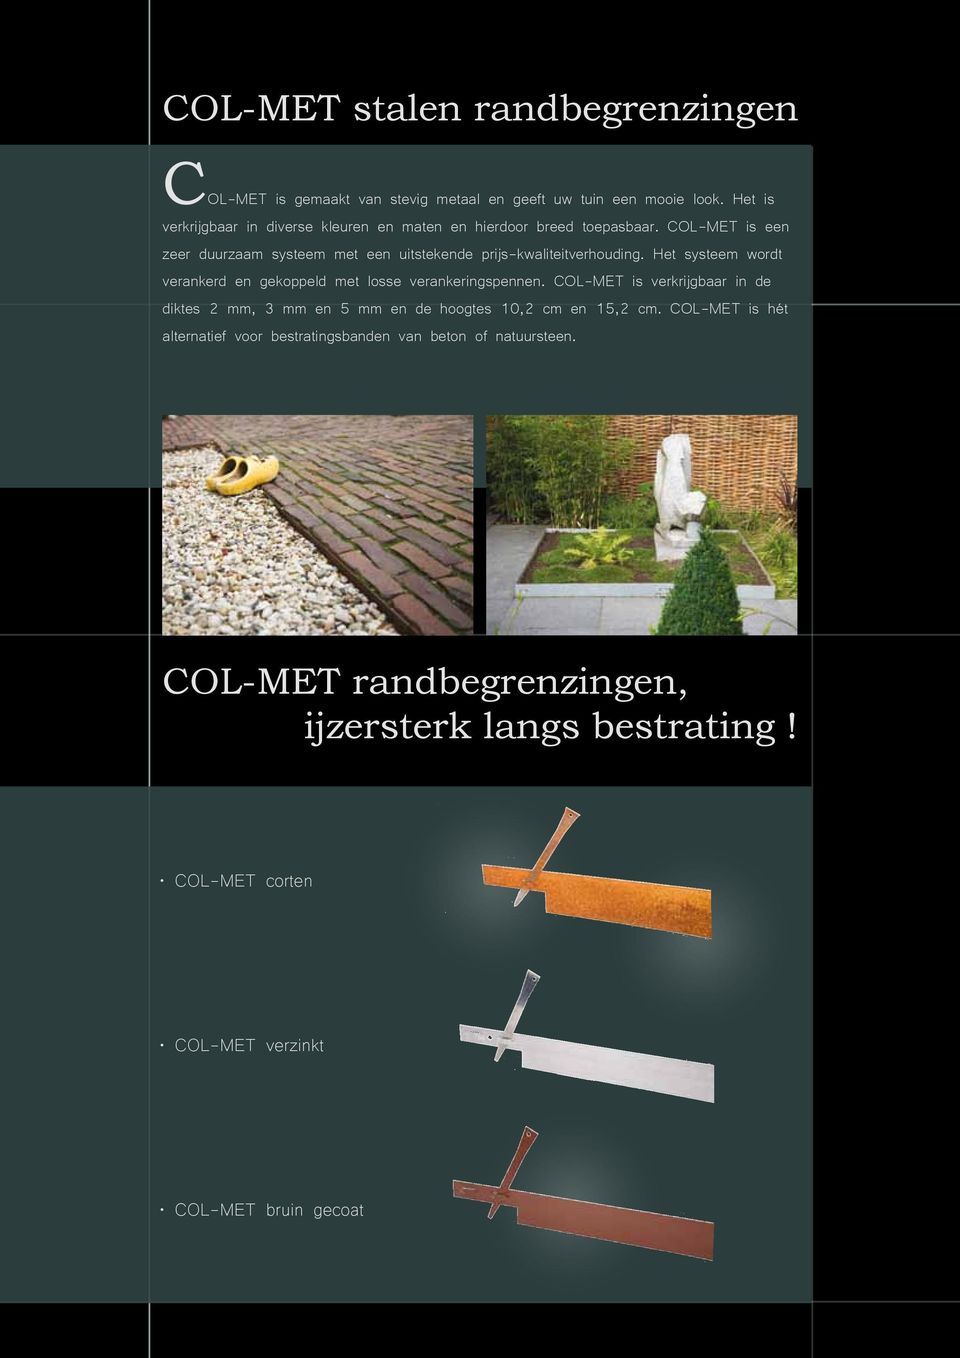 COL-MET is een zeer duurzaam systeem met een uitstekende prijs-kwaliteitverhouding.